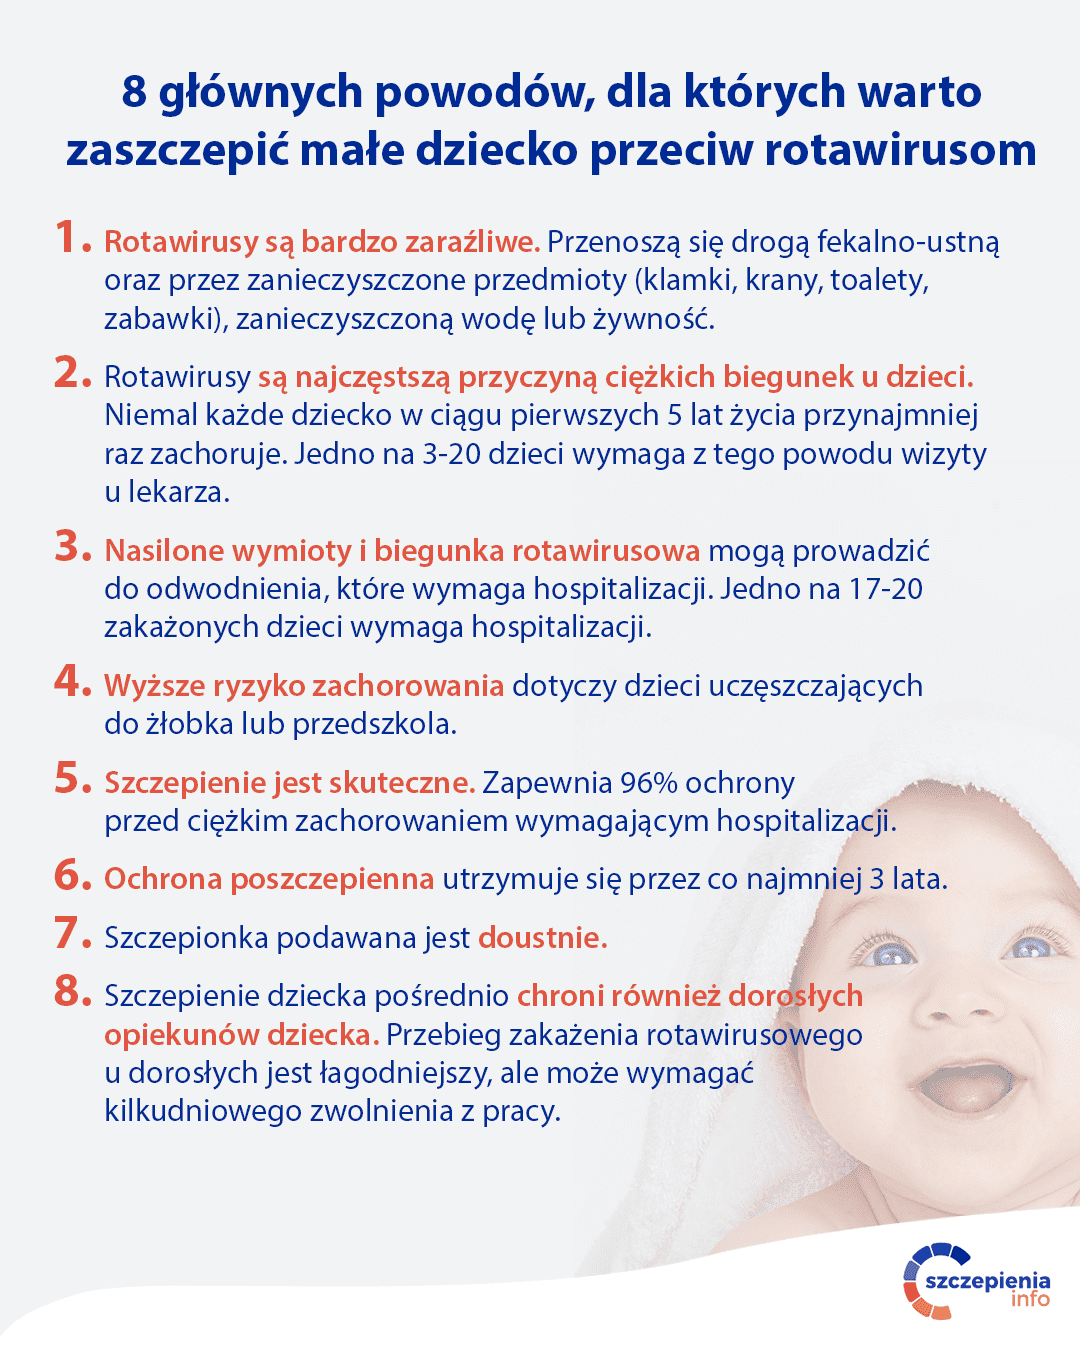 8 głównych powodów do zaszczepienia dziecka przeciw rotawirusom.